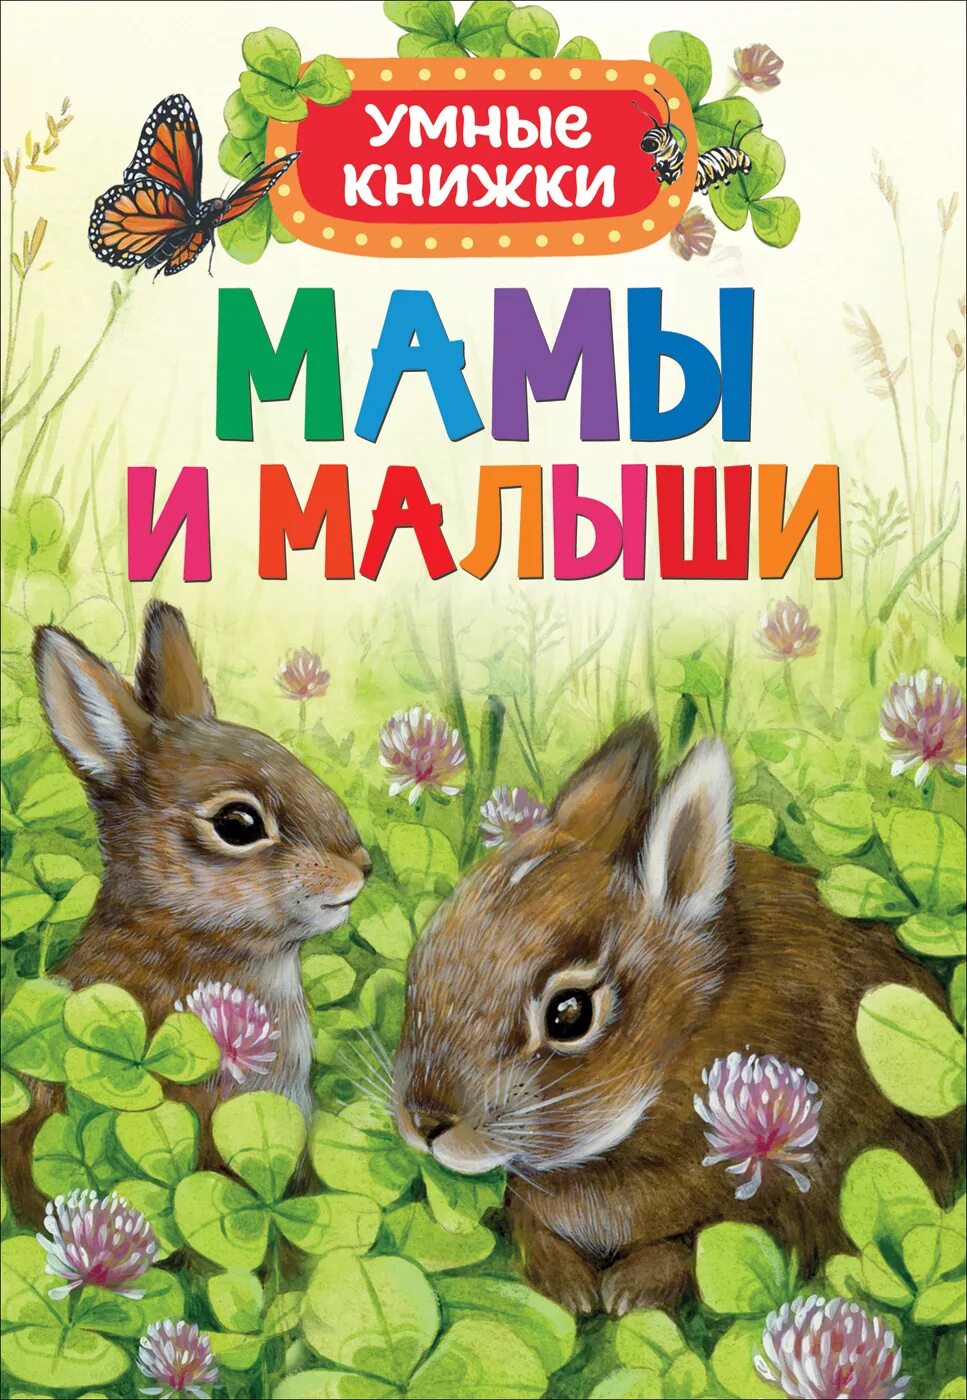 Книга маме дорогой. Книжка для самых маленьких. Книга мамы и малыши. Книги о маме. Книги о животных для детей.